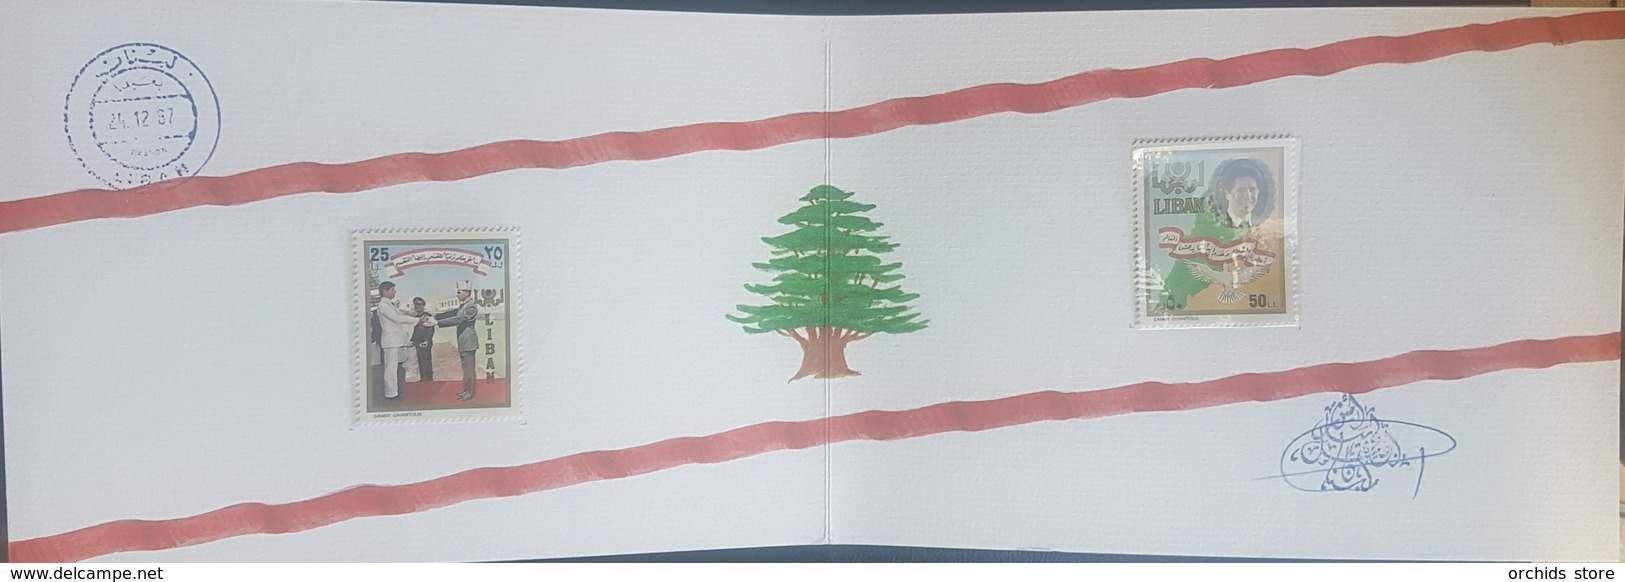 Lebanon 1987 President Gemayel - Ltd Edition Deluxe Folder - MNH, Signed By The President - Liban